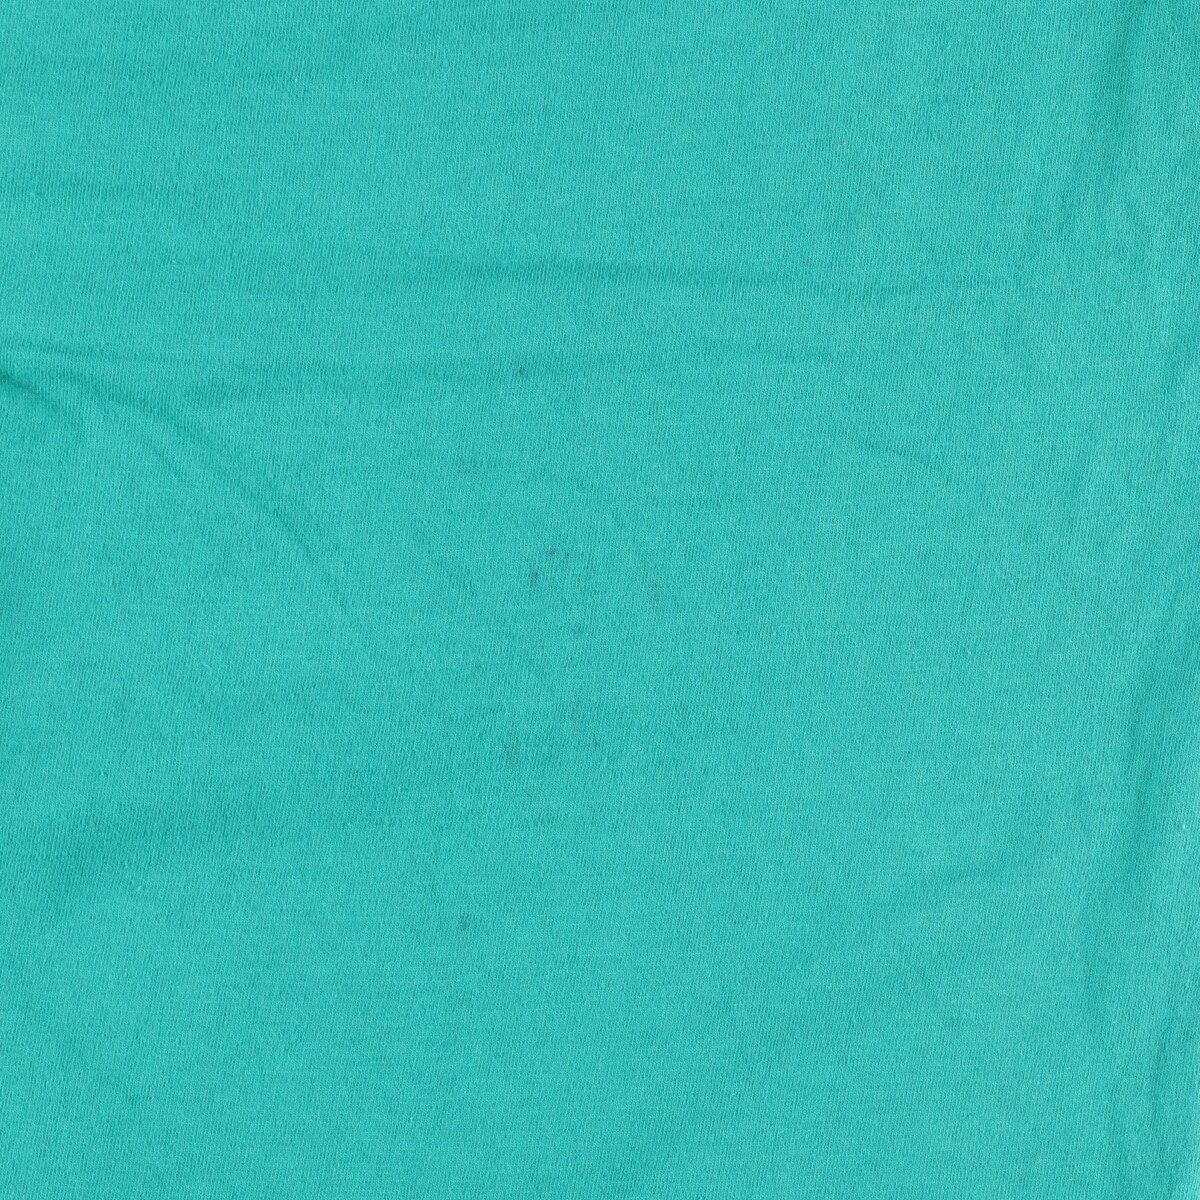 90年代 アンビル anvil 魚柄 アニマルプリントTシャツ USA製 メンズM ヴィンテージ /eaa320828アニマルプリントTシャツ素材